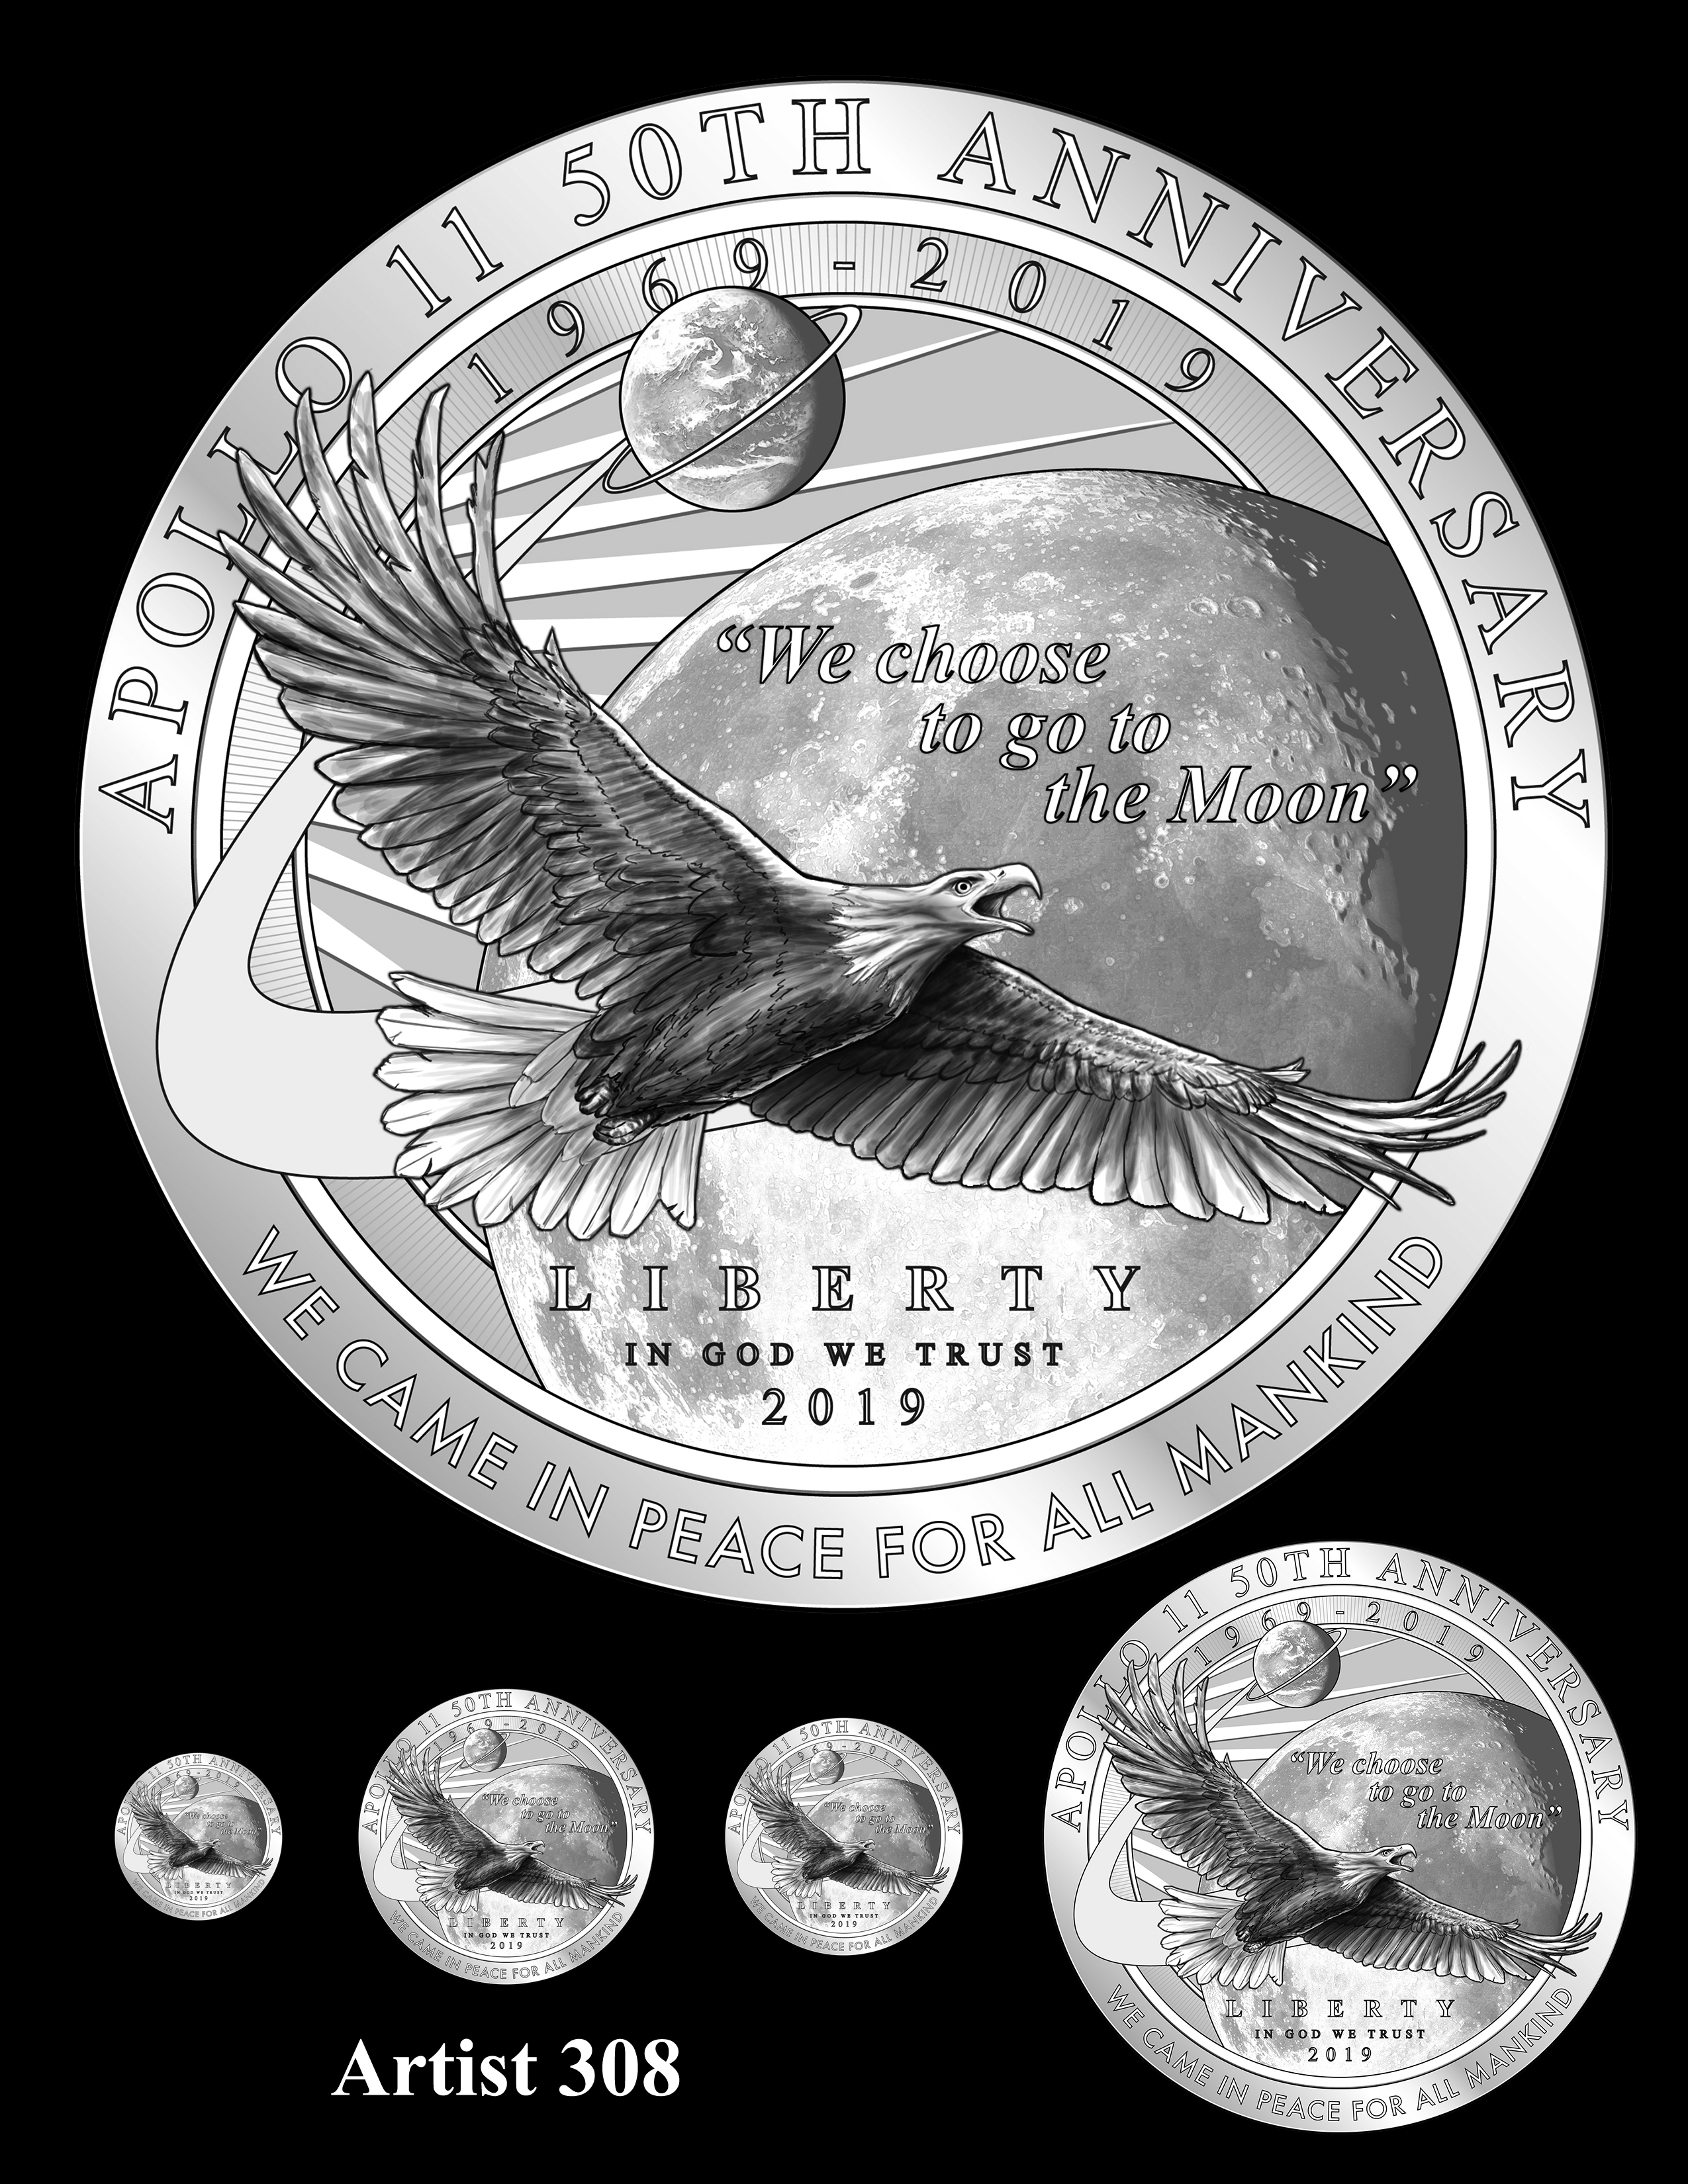 Artist 308 -- Apollo 11 50th Anniversary Commemorative Coin Obverse Design Competition